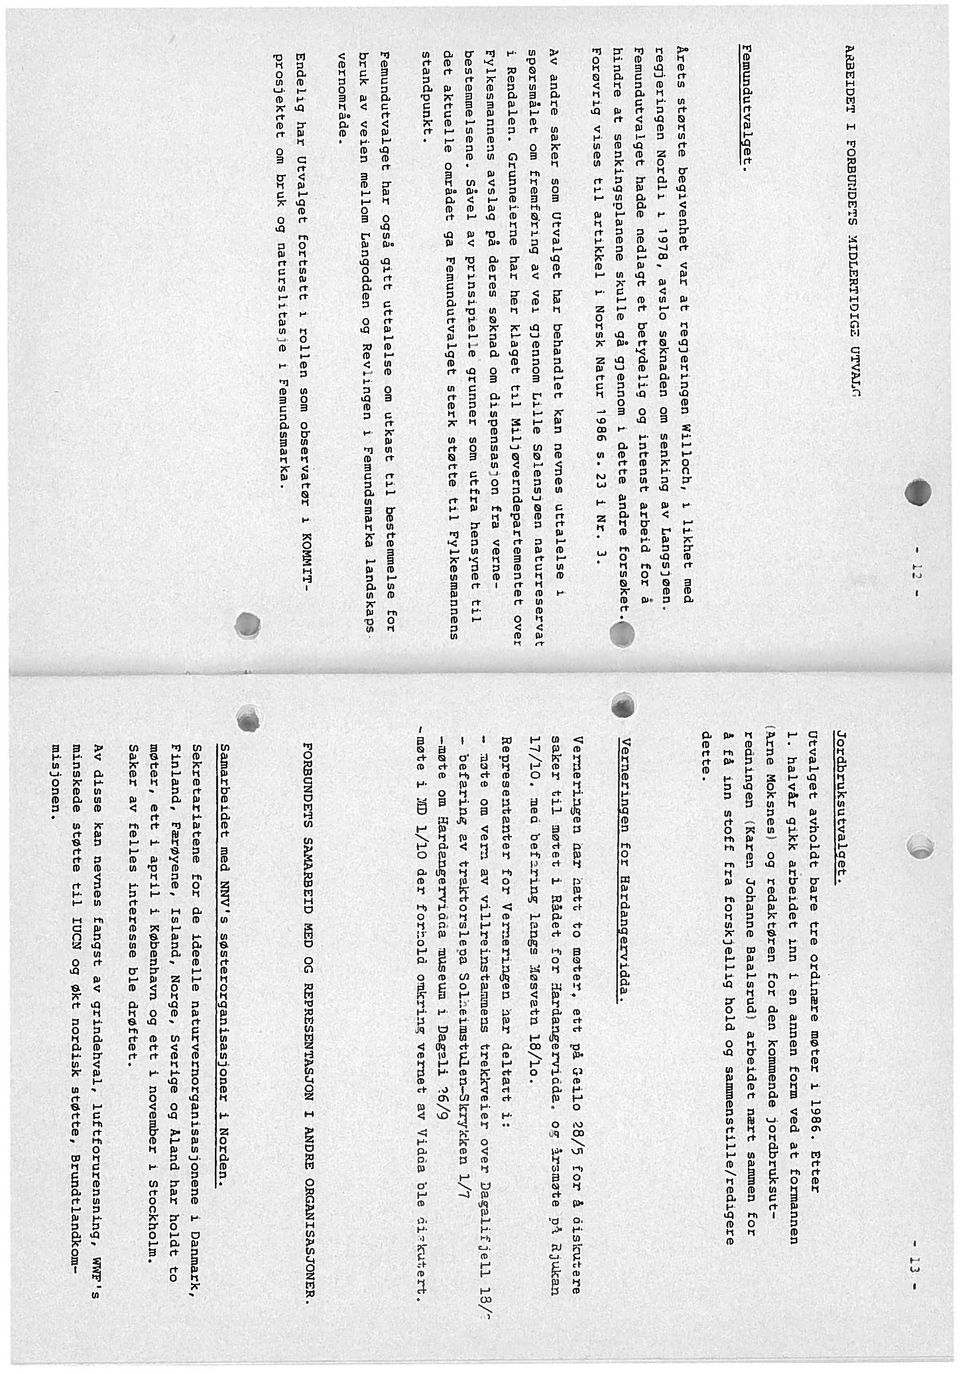 møter i 1986. Etter Jordbruksutvalaet. dette. regjeringen Ncrdli i 1978, avslo søknaden om senkng Langsjøen.